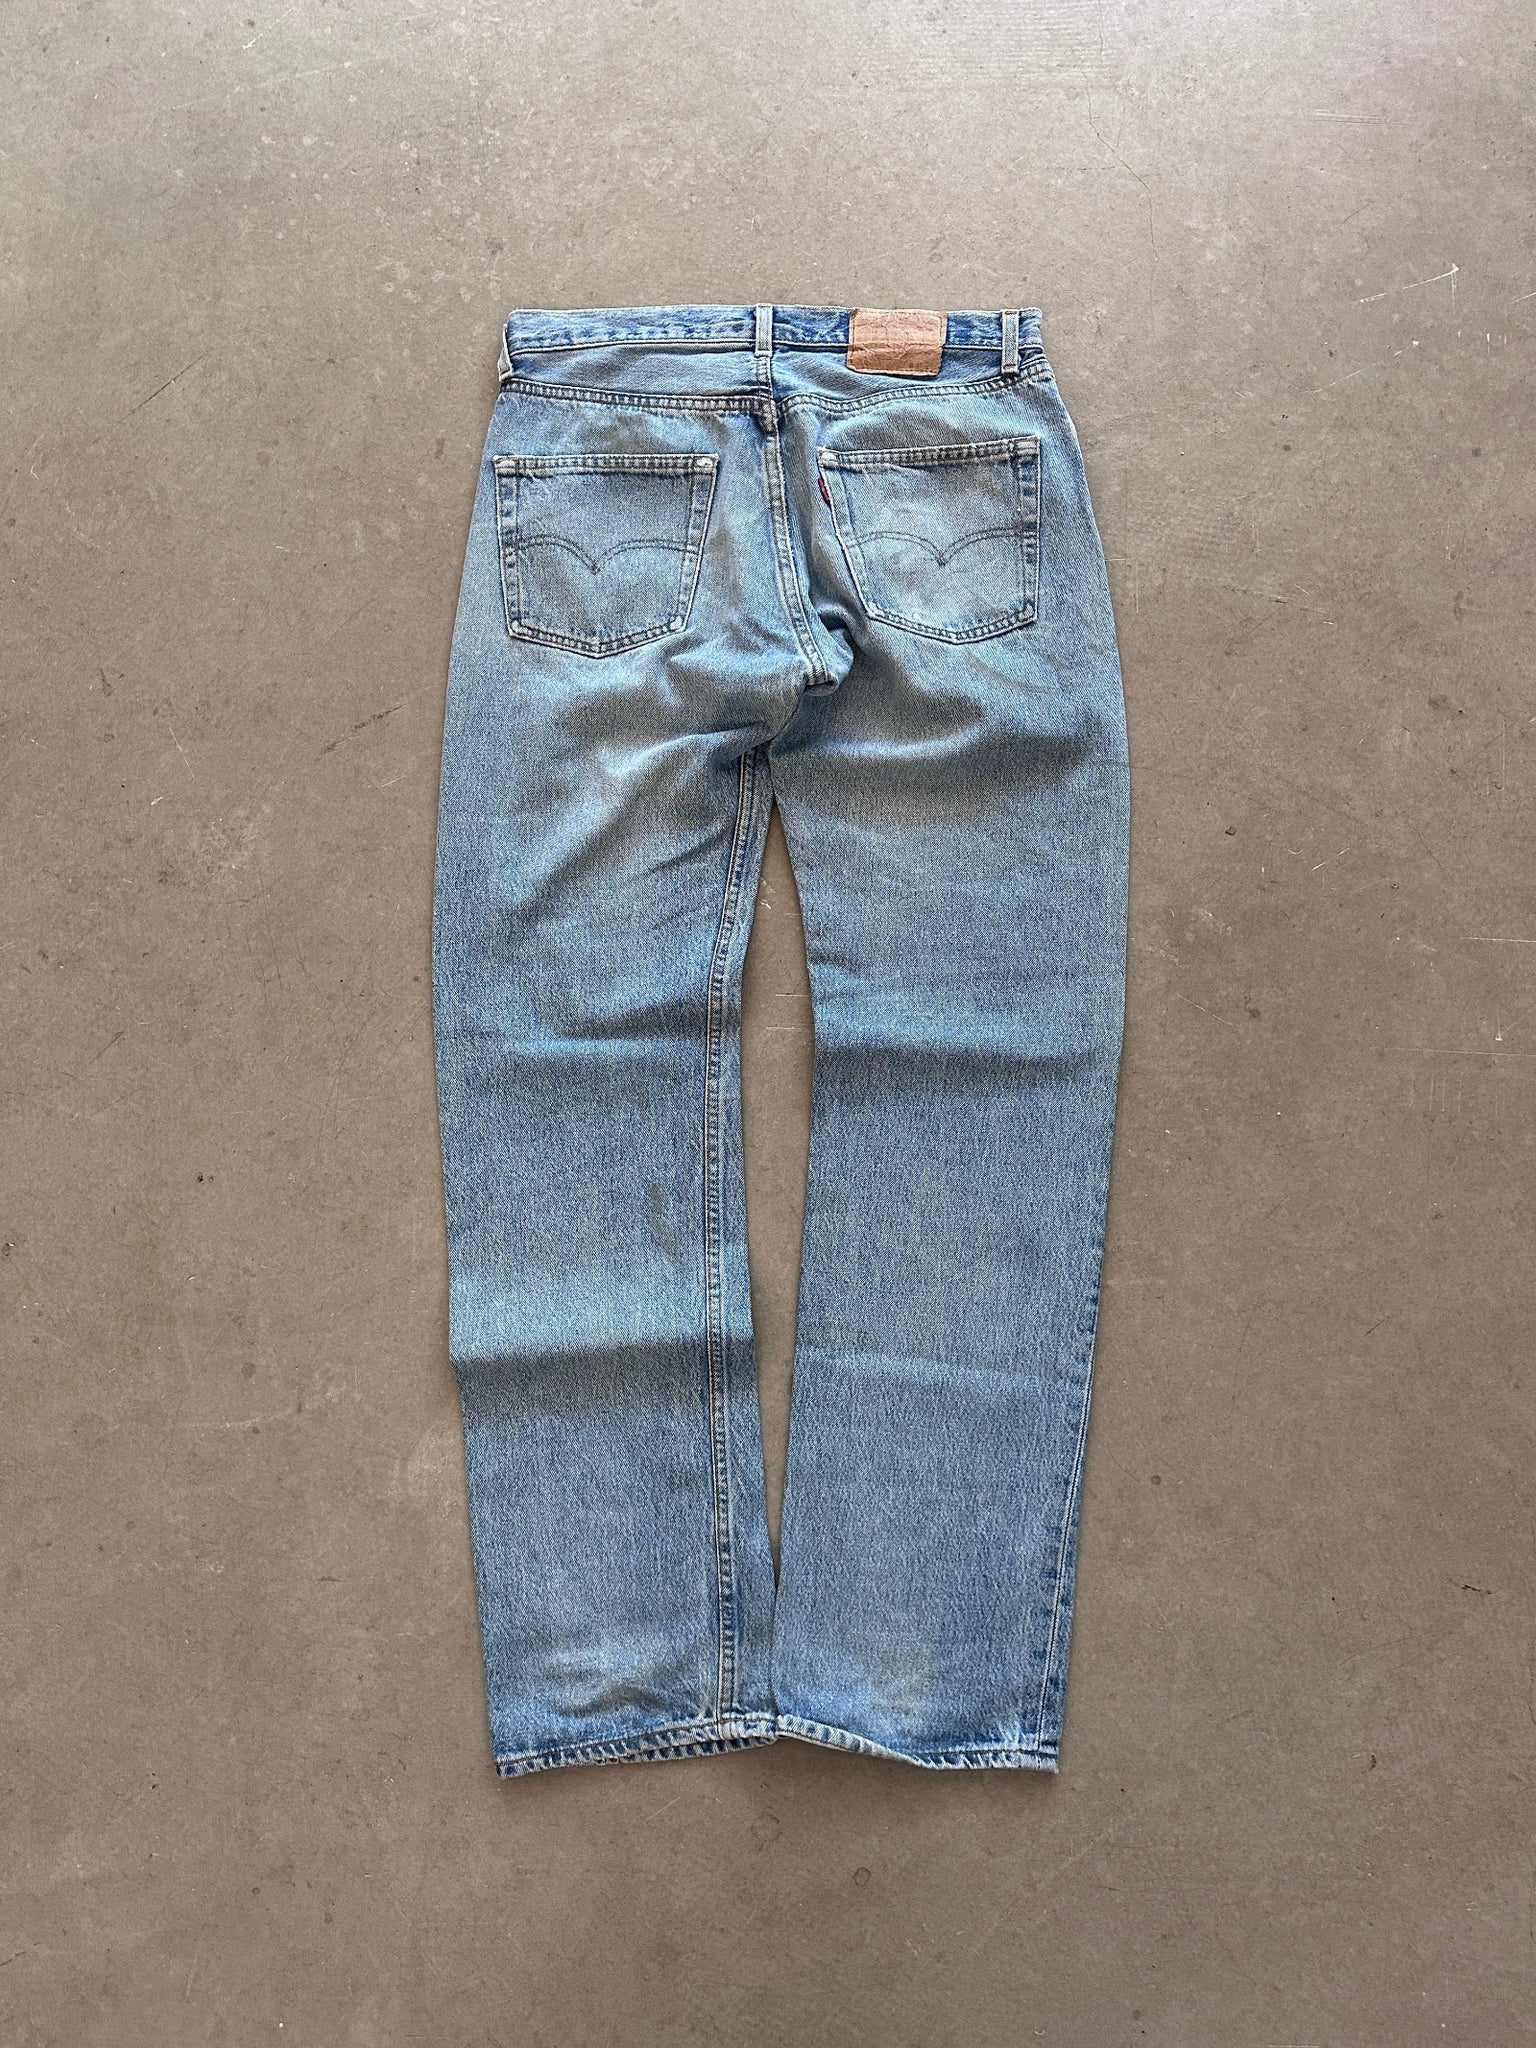 1989 Levi's 501 Jeans - 33 x 34